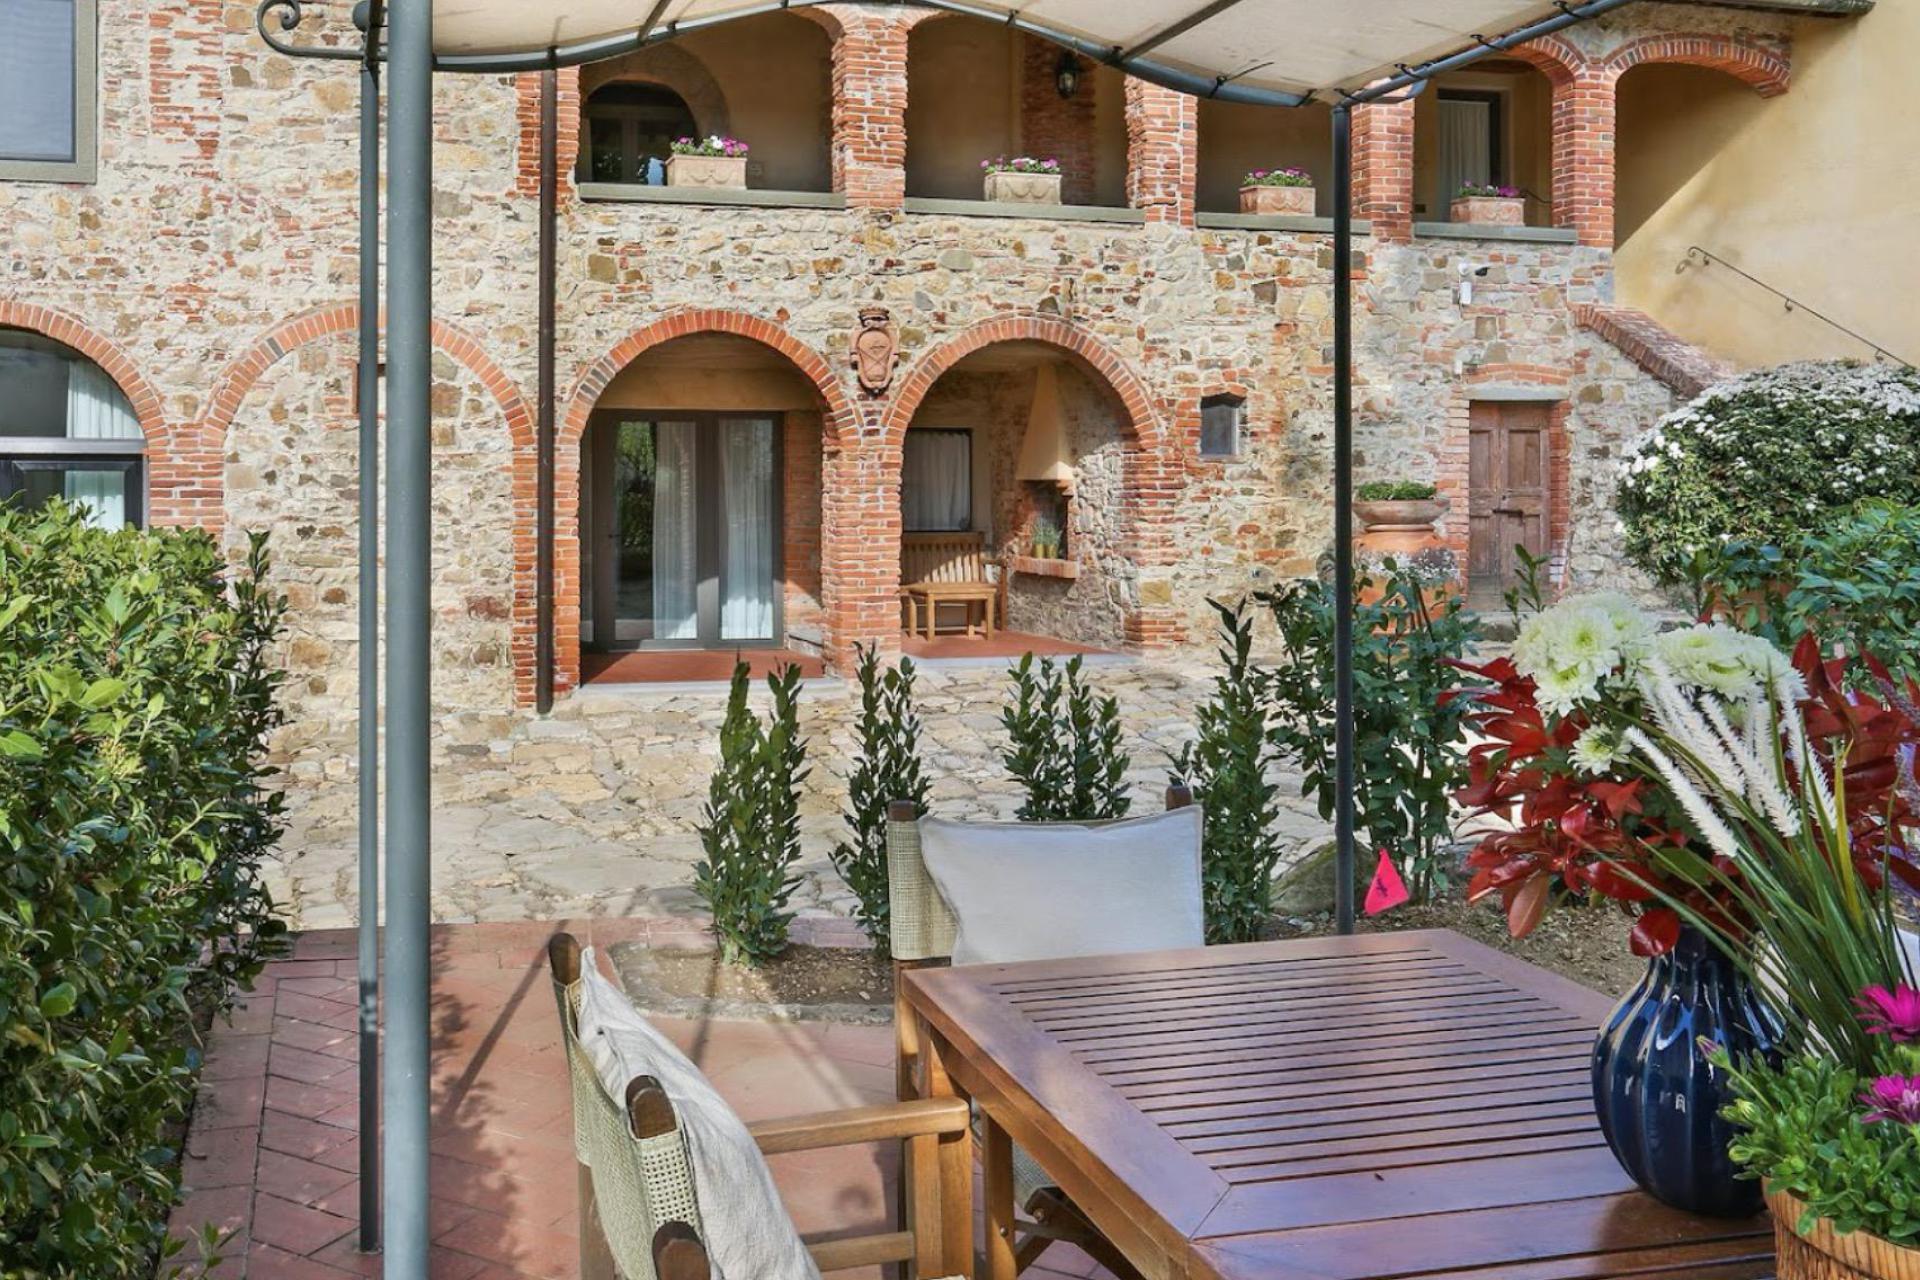 Agriturismo Toskana 11 Wohnungen in der Toskana mit Restaurant und Weinbar | myitalyselection.de